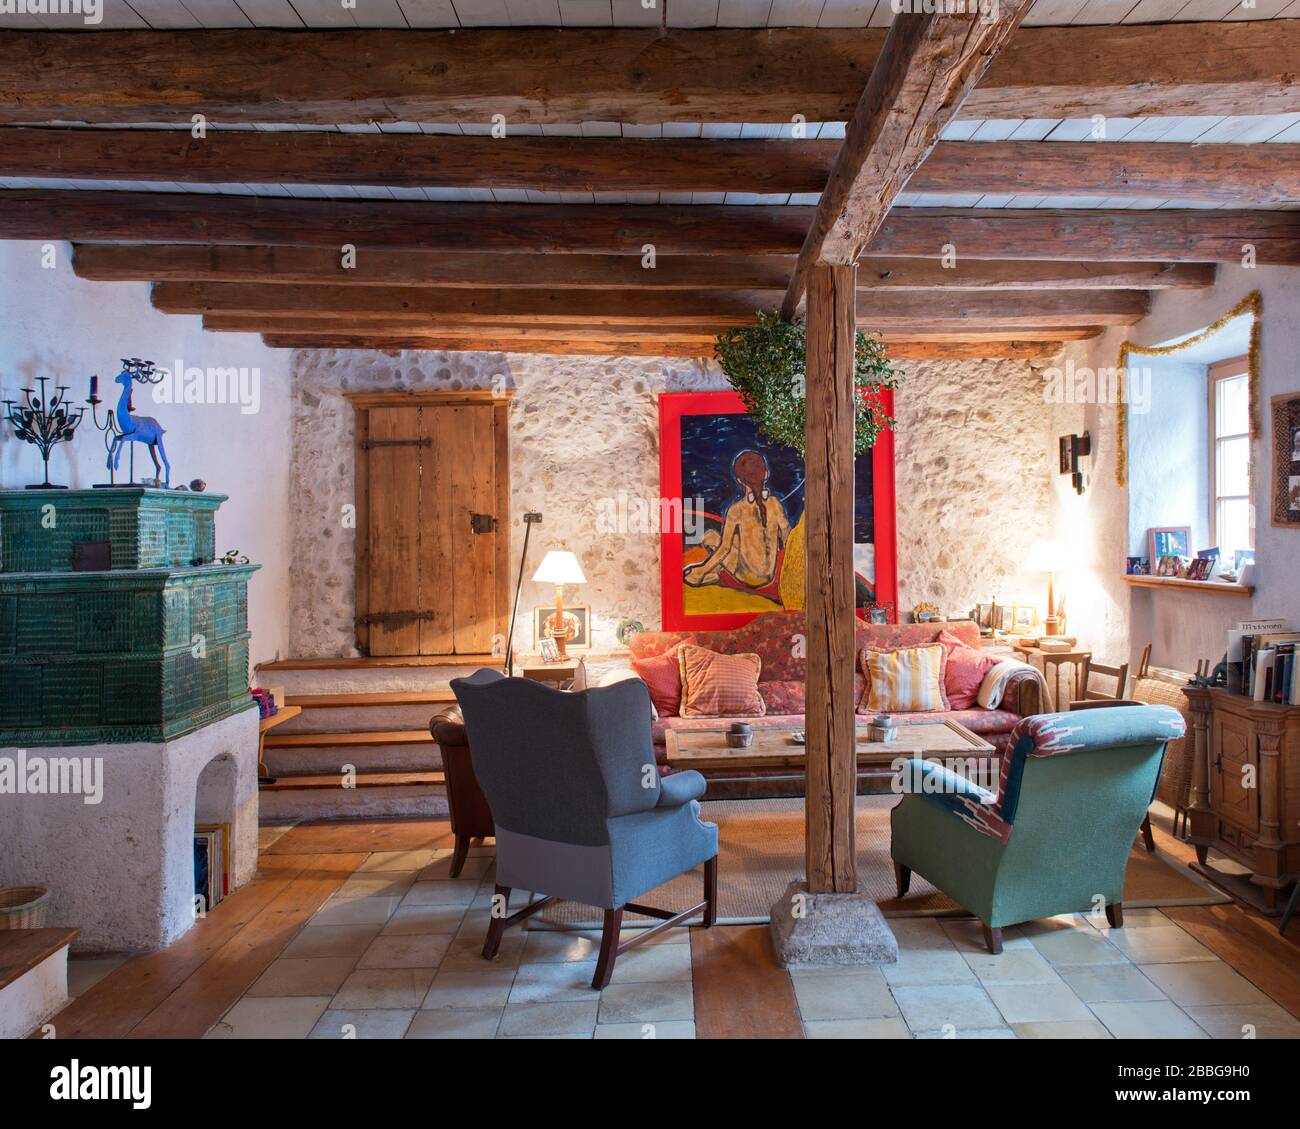 soggiorno in stile country con stufa in maiolica verde, divano, tramen in legno e pittura ad olio Foto Stock